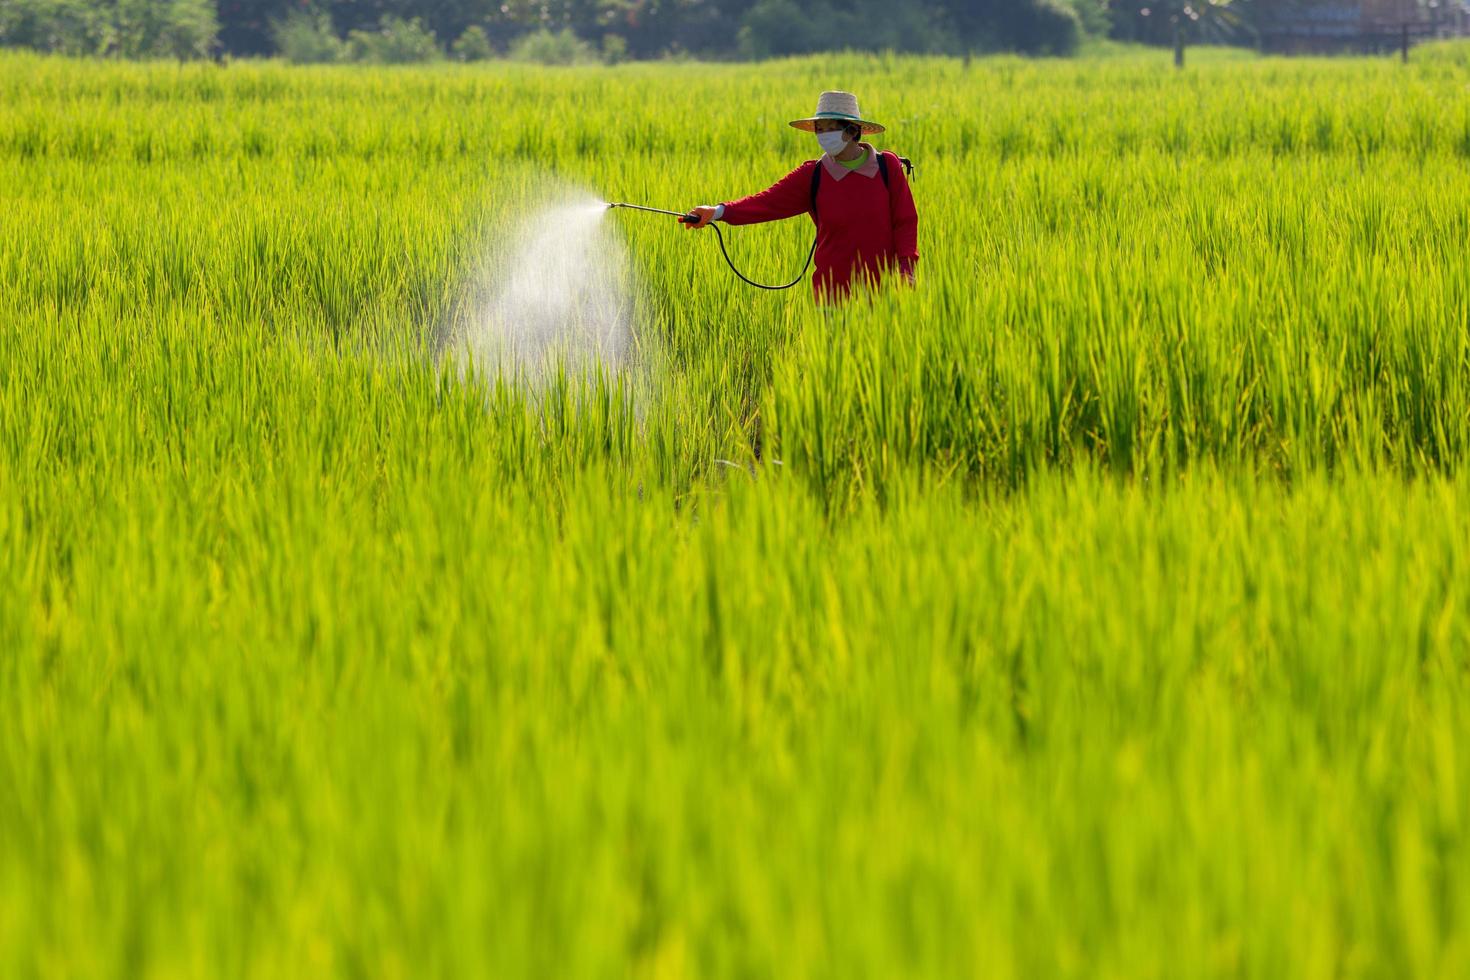 agriculteur pour pulvériser des herbicides ou des engrais chimiques sur les champs de riz vert photo